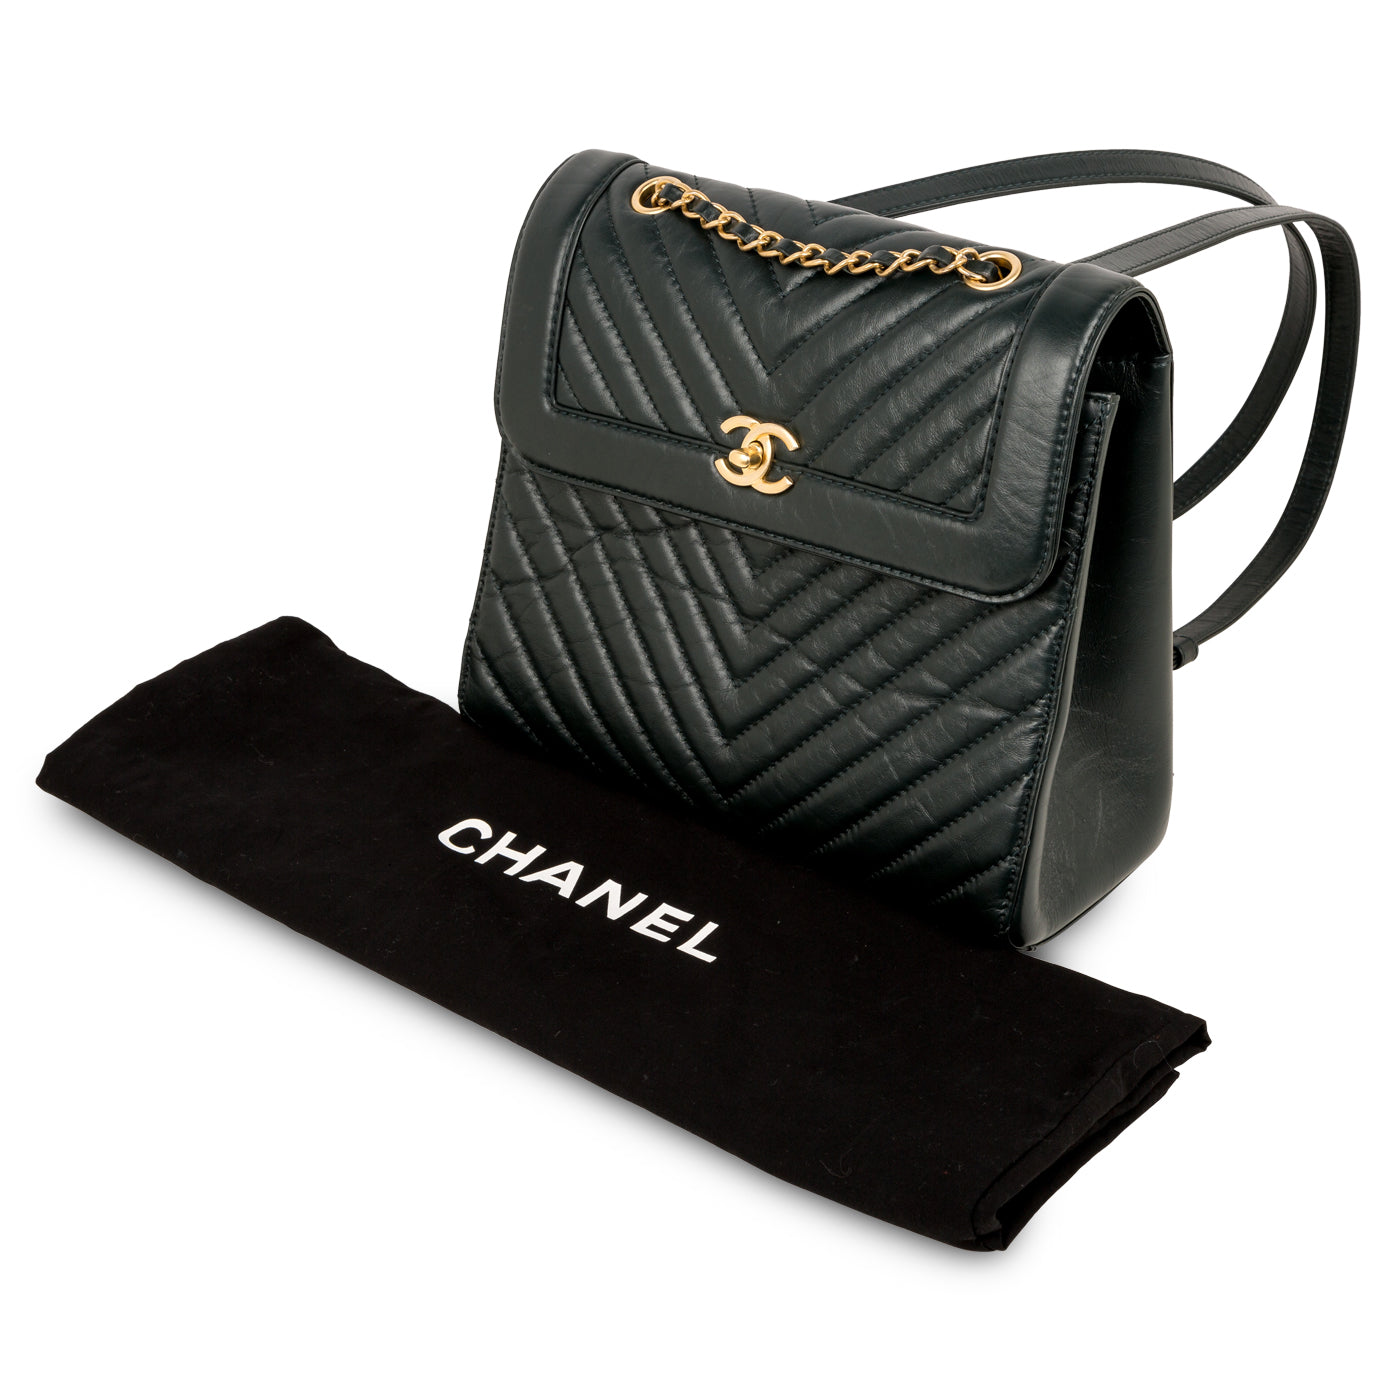 Pristine Chanel Aged Calfskin Large Chevron Framed Backpack Bag GHW –  Boutique Patina